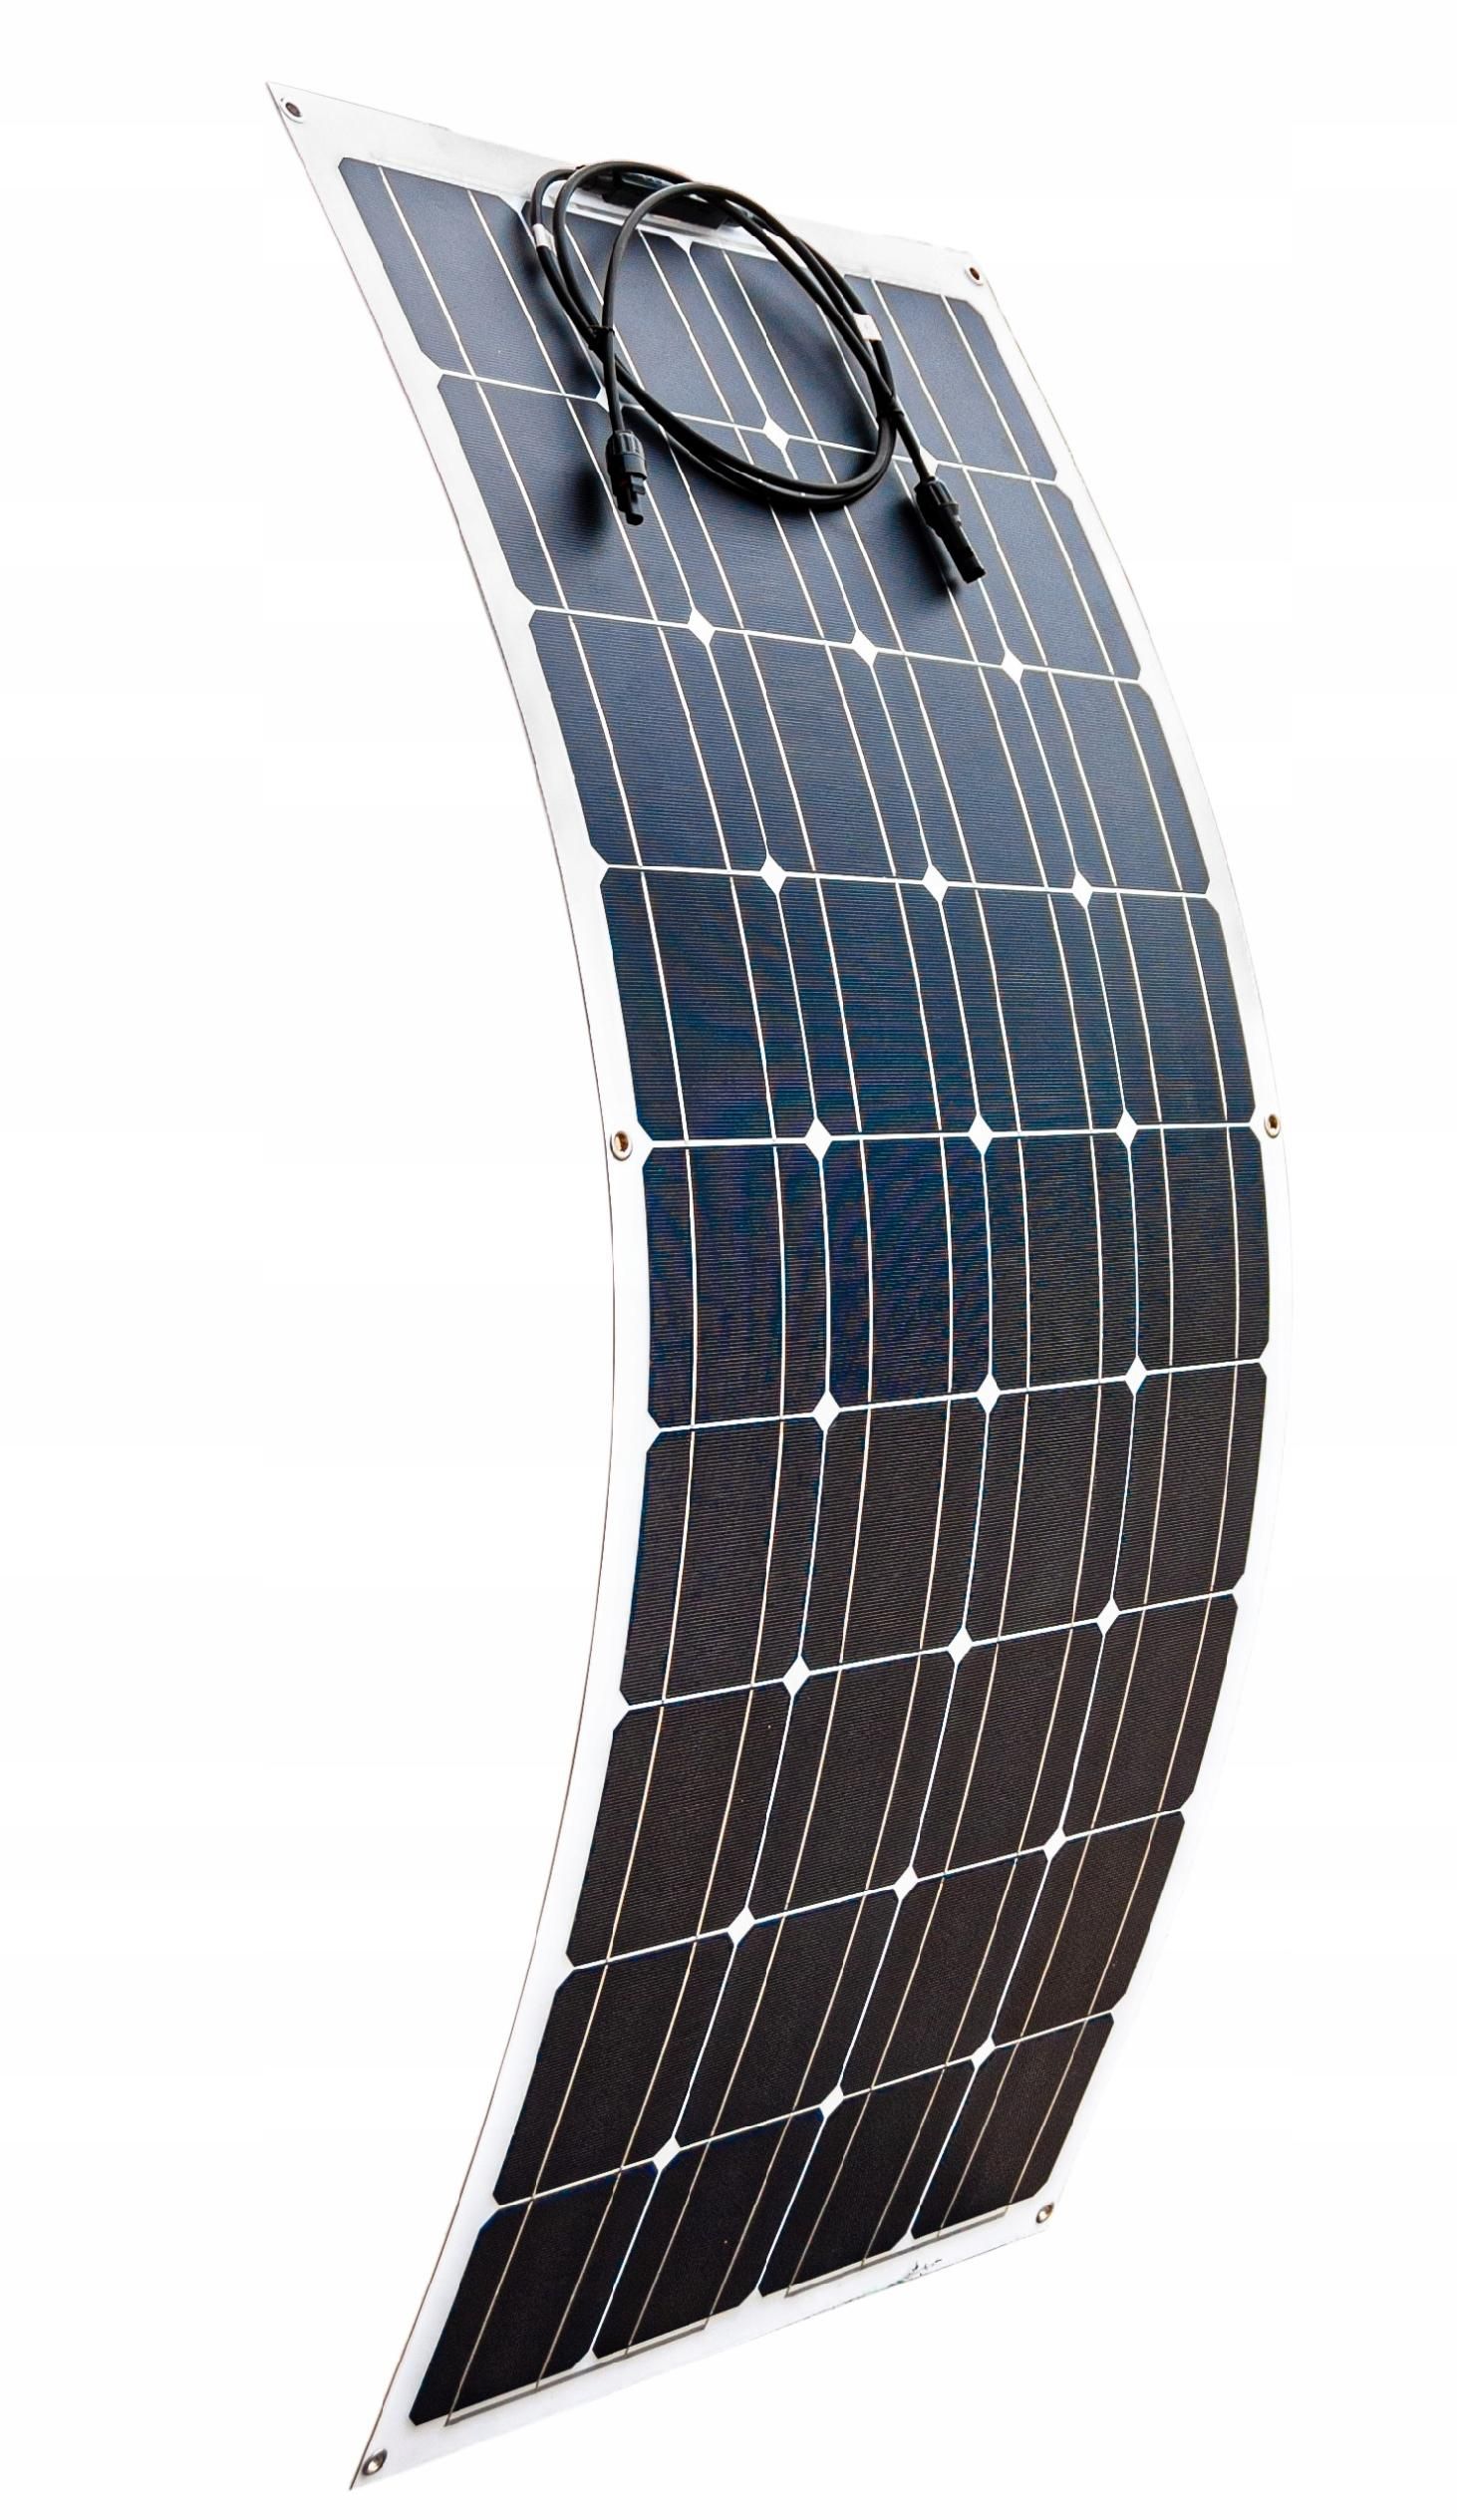 Panel solarny bateria słoneczna 100W 12 elastyczny (ZES254)